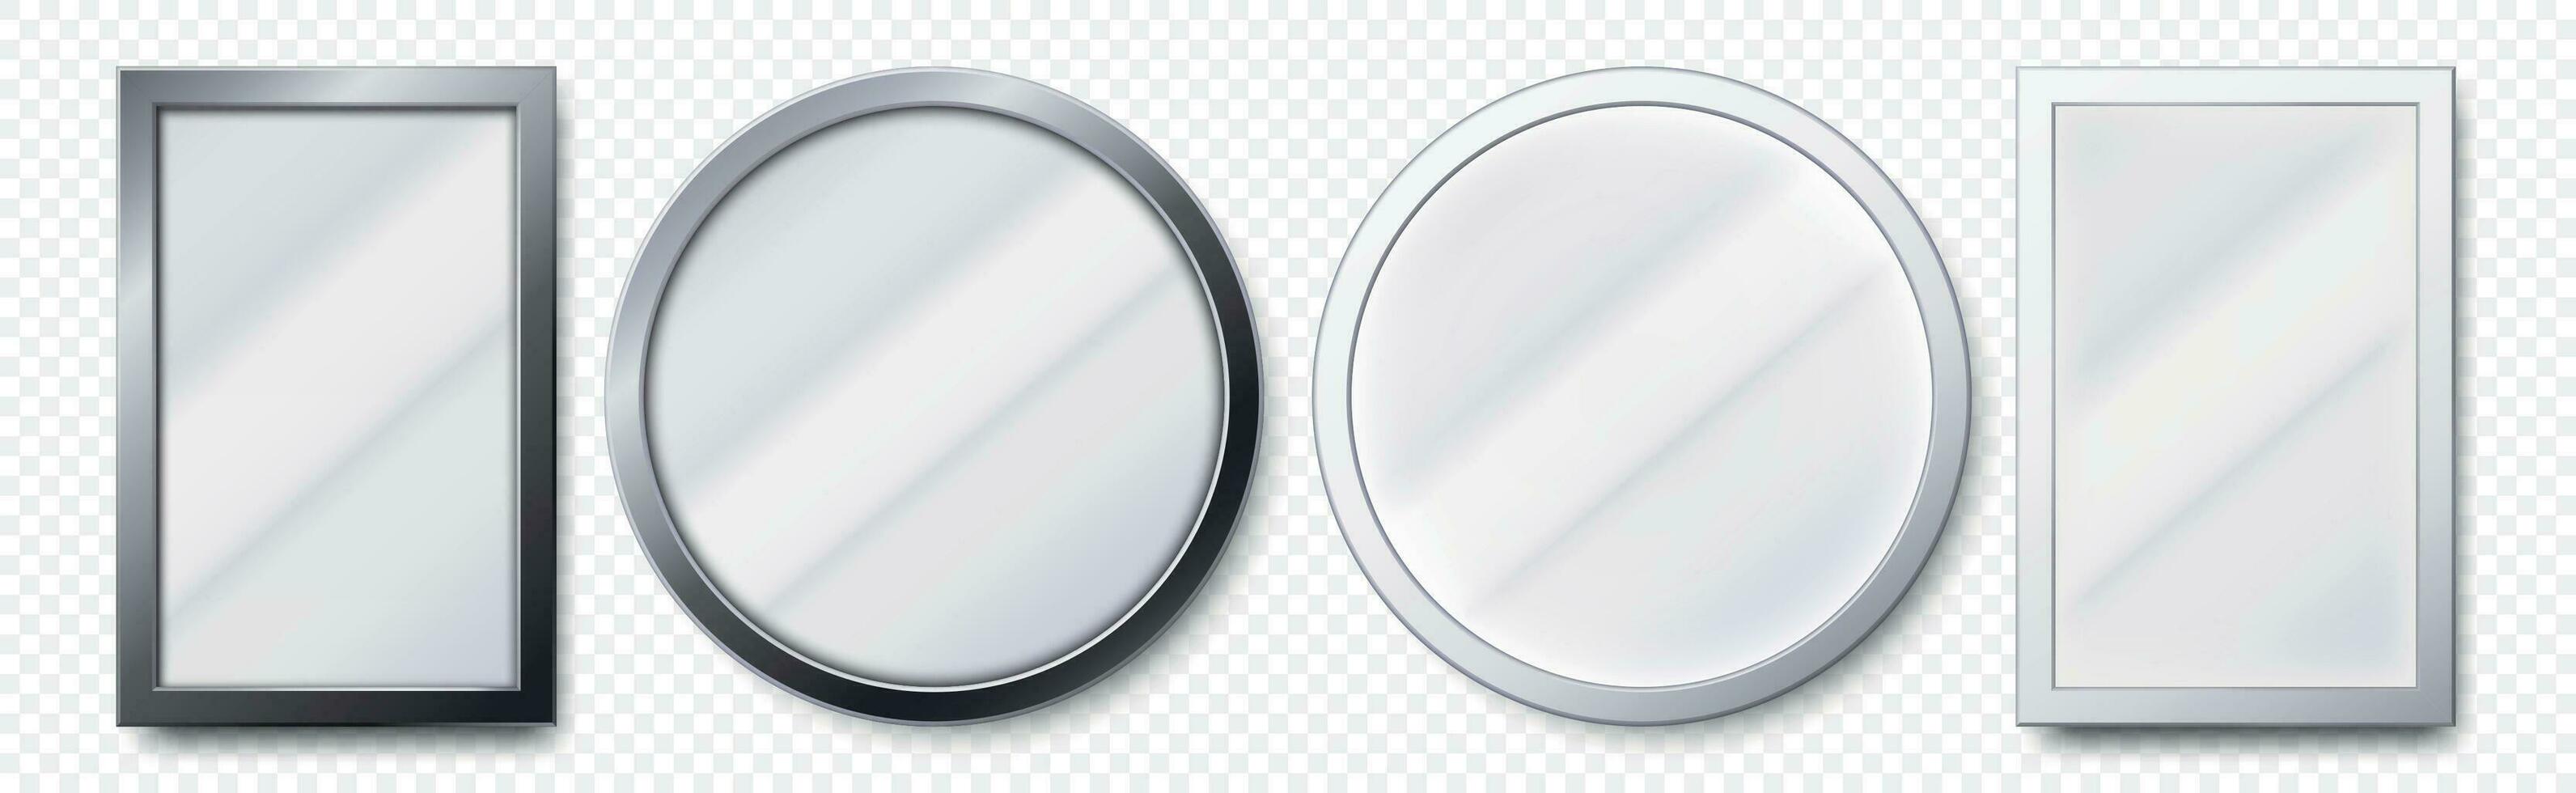 realista espejos metal redondo y rectangular espejo marco, blanco espejos modelo 3d vector conjunto